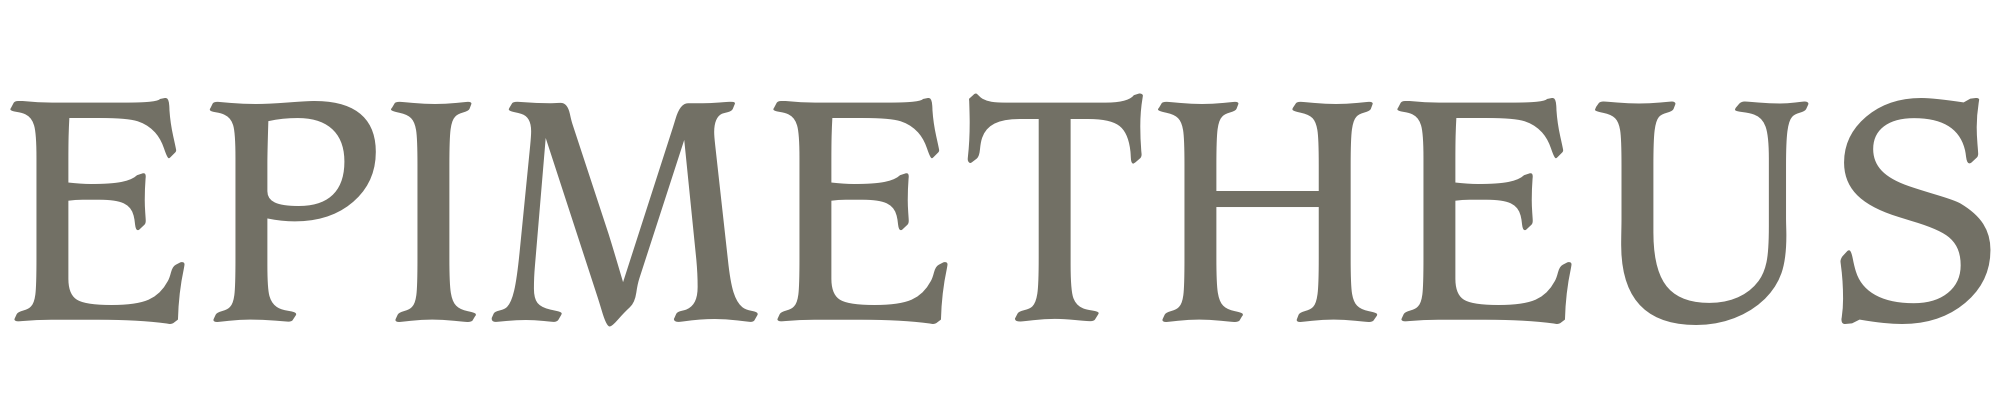 Epimetheus Logo - Epimetheus's Meaning of Epimetheus